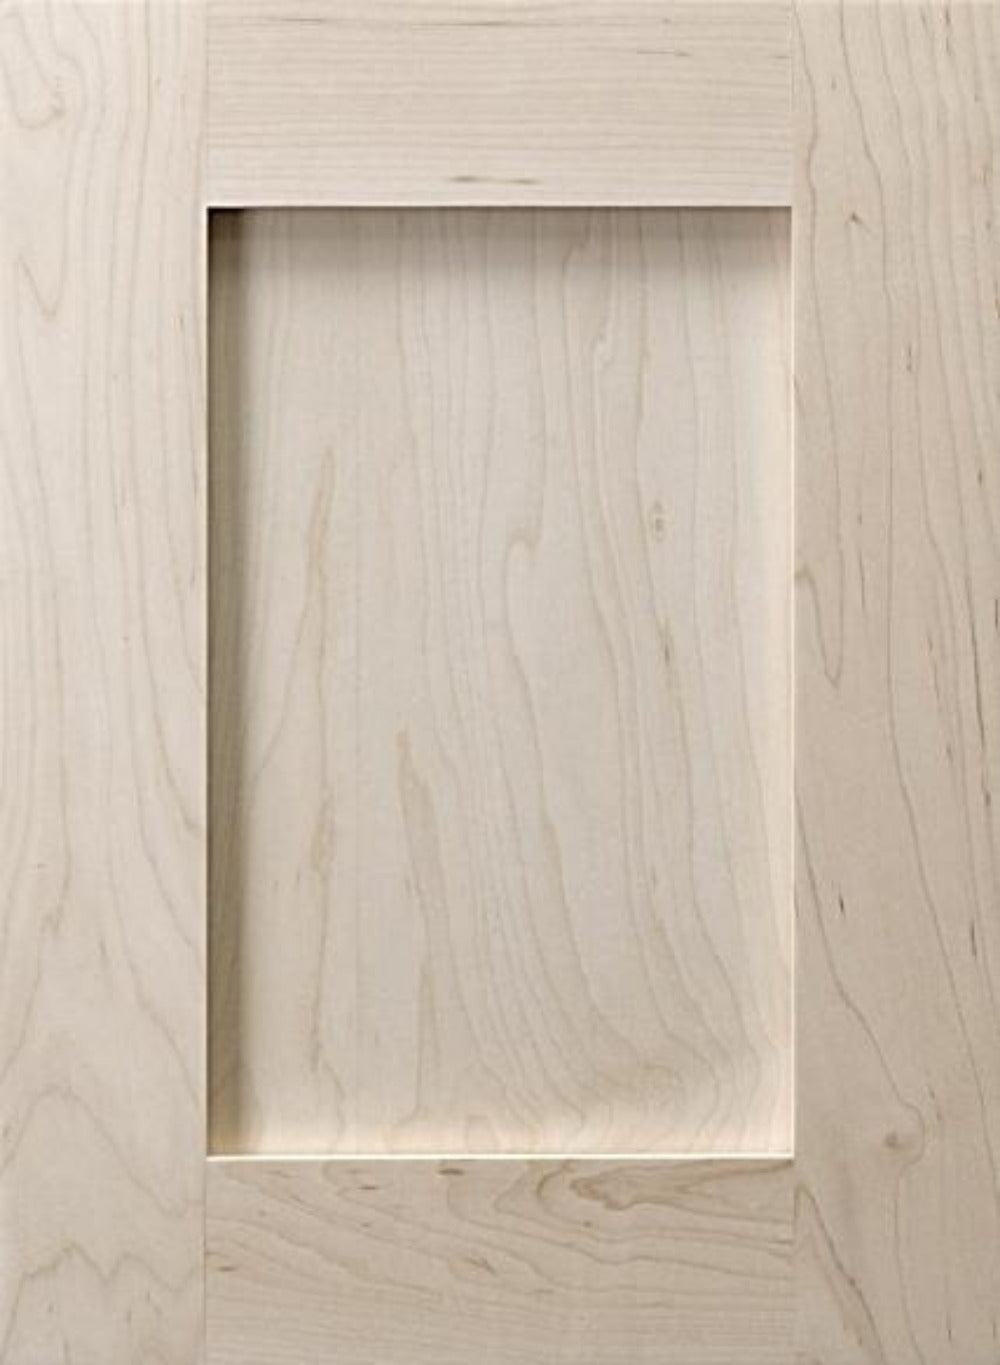 Wooden Custom Cabinet Doors, Receding Panel